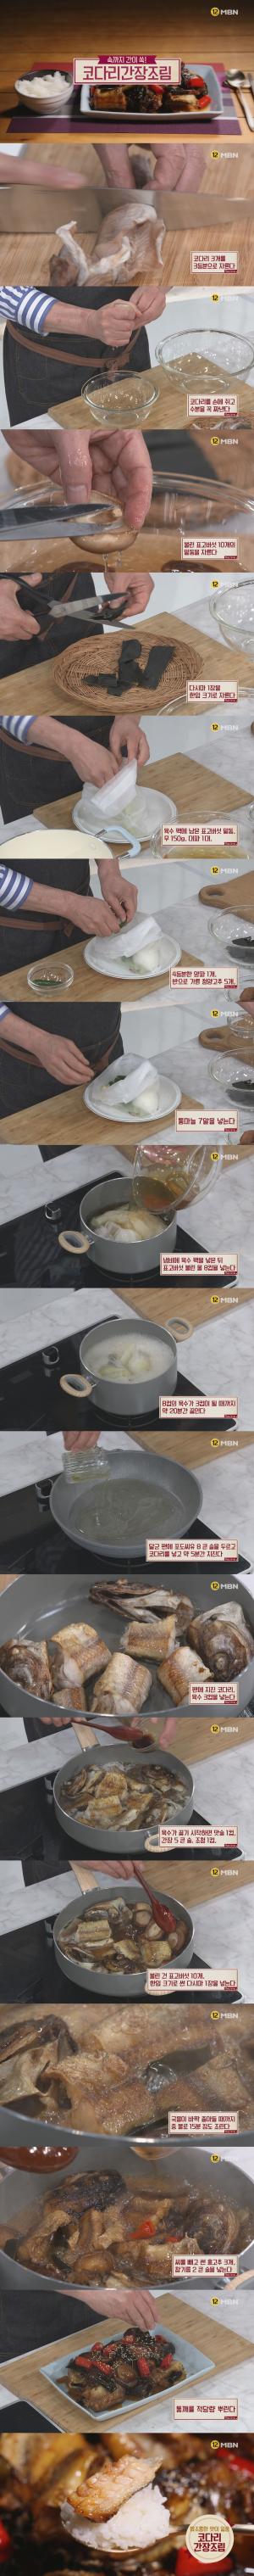 ‘알토란’ 코다리간장조림, 김하진 요리연구가 레시피에 이목집중…‘만드는 법은?’